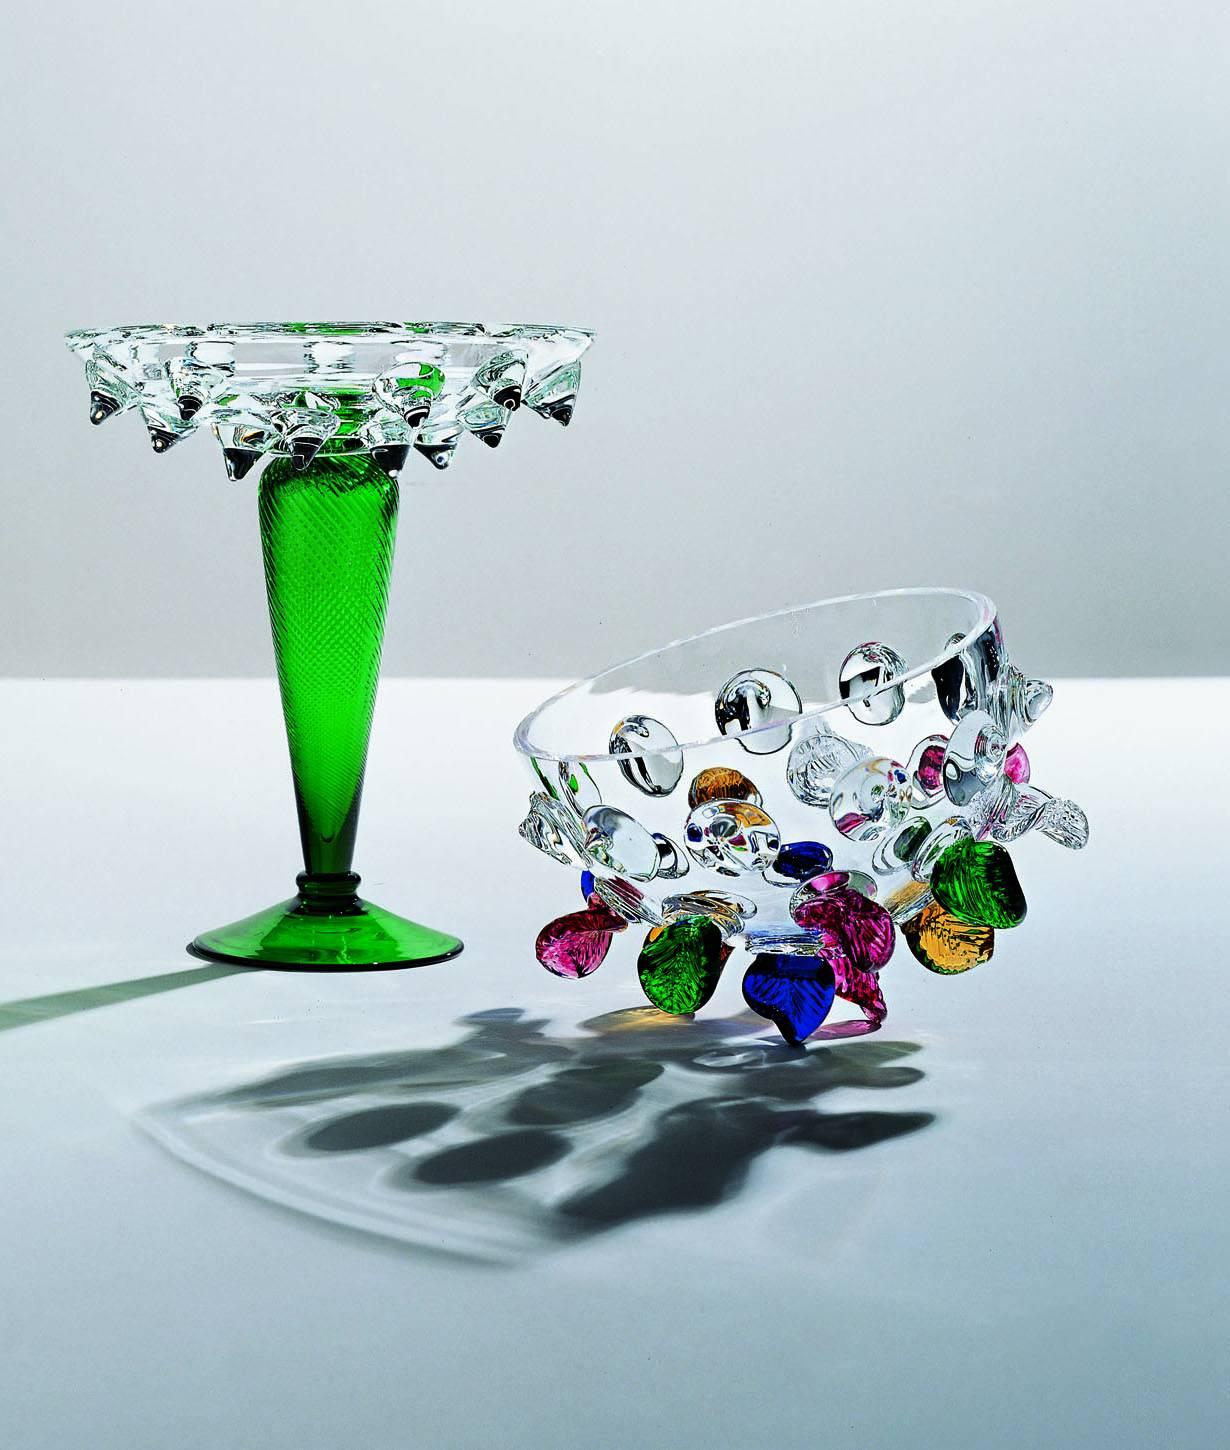 Élégant centre de table en verre transparent et vert avec des décorations de pierres précieuses. 

Borek Sipek (1949-2016). Après avoir étudié l'architecture d'intérieur à l'école des arts et métiers de Prague (1964-1968), il est parti en Allemagne